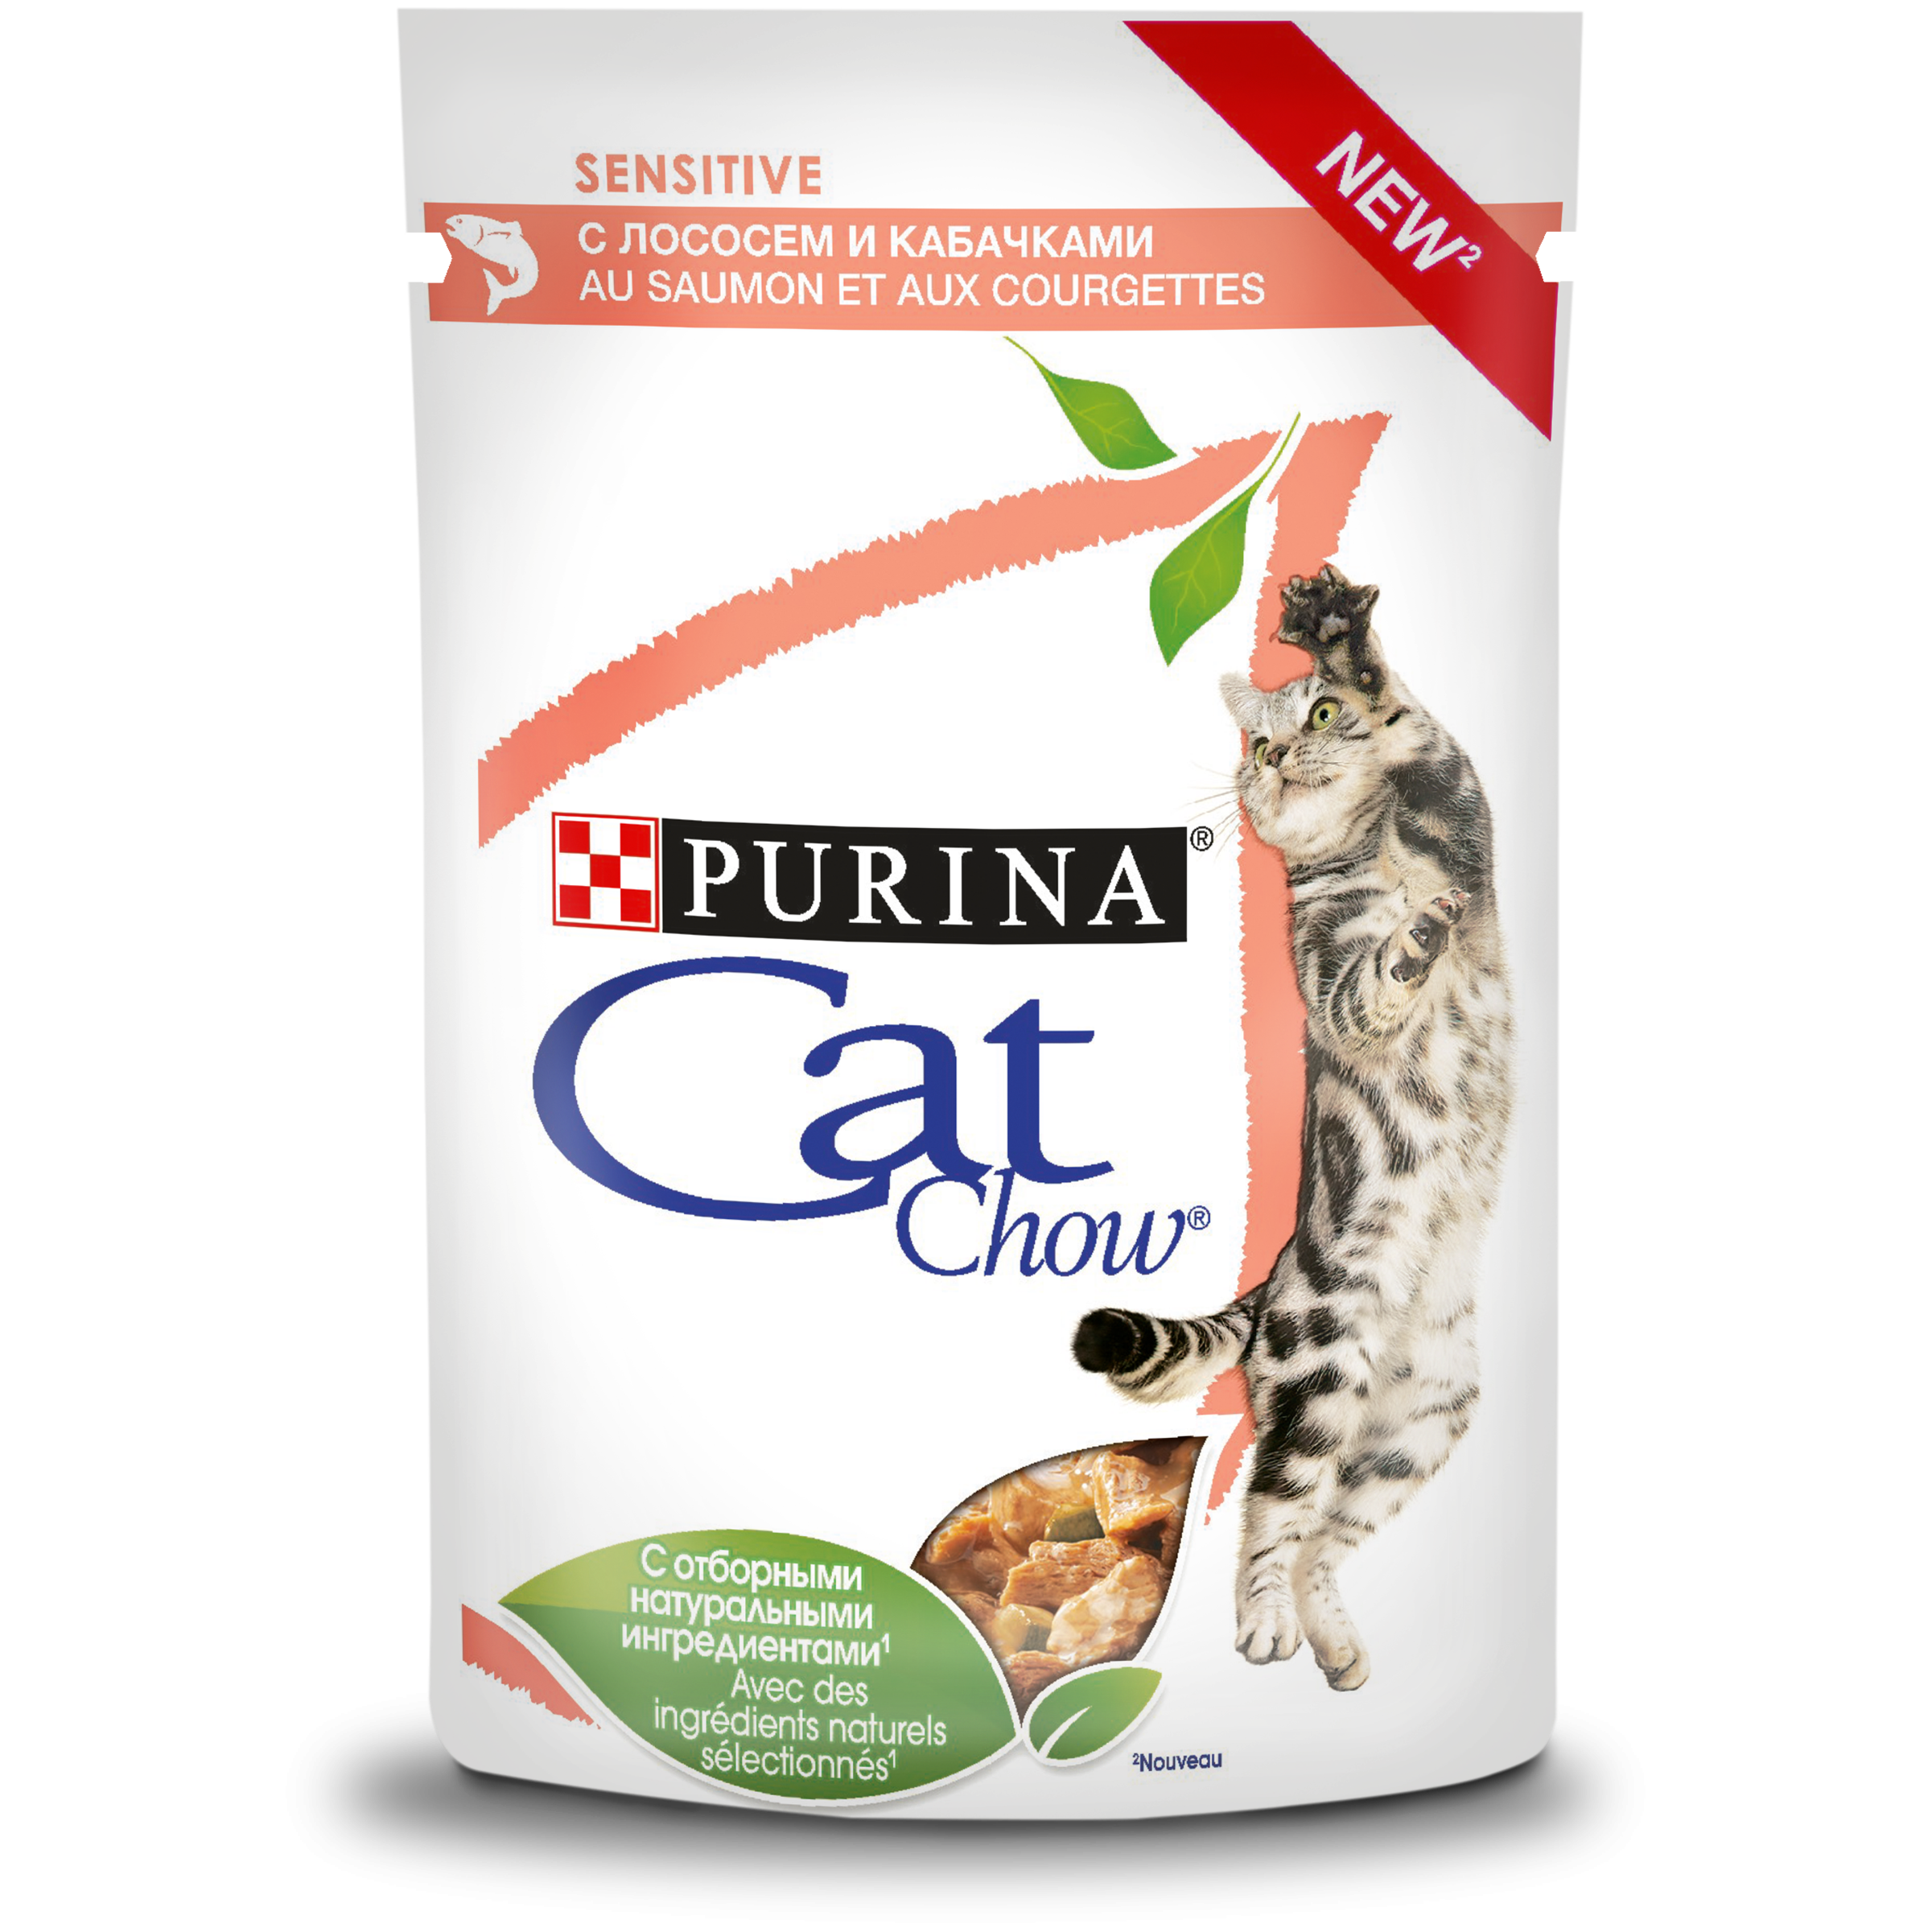 Purina Cat Chow Sensitive Пауч для кошек с лососем и кабачками 0,085 кг